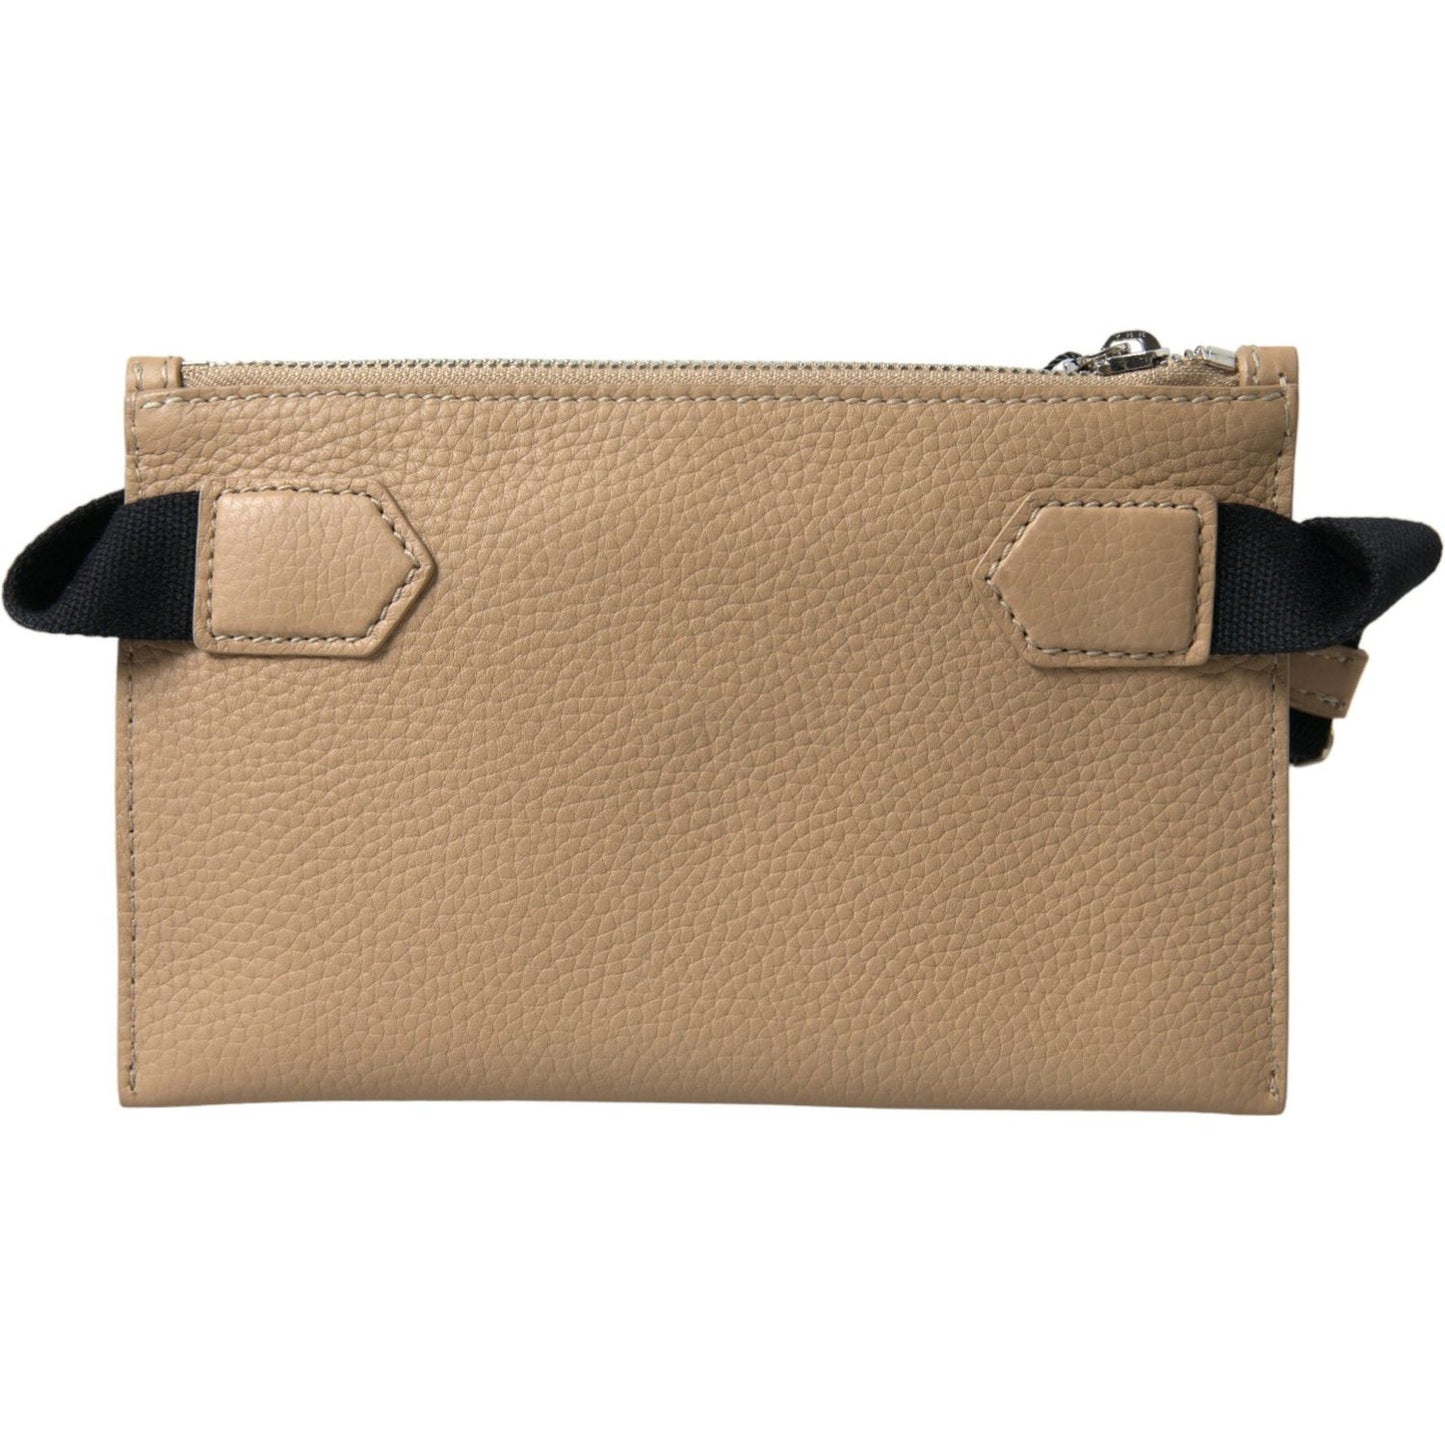 Dolce & Gabbana | Elegance Redefined Beige Leather Belt Bag| McRichard Designer Brands   